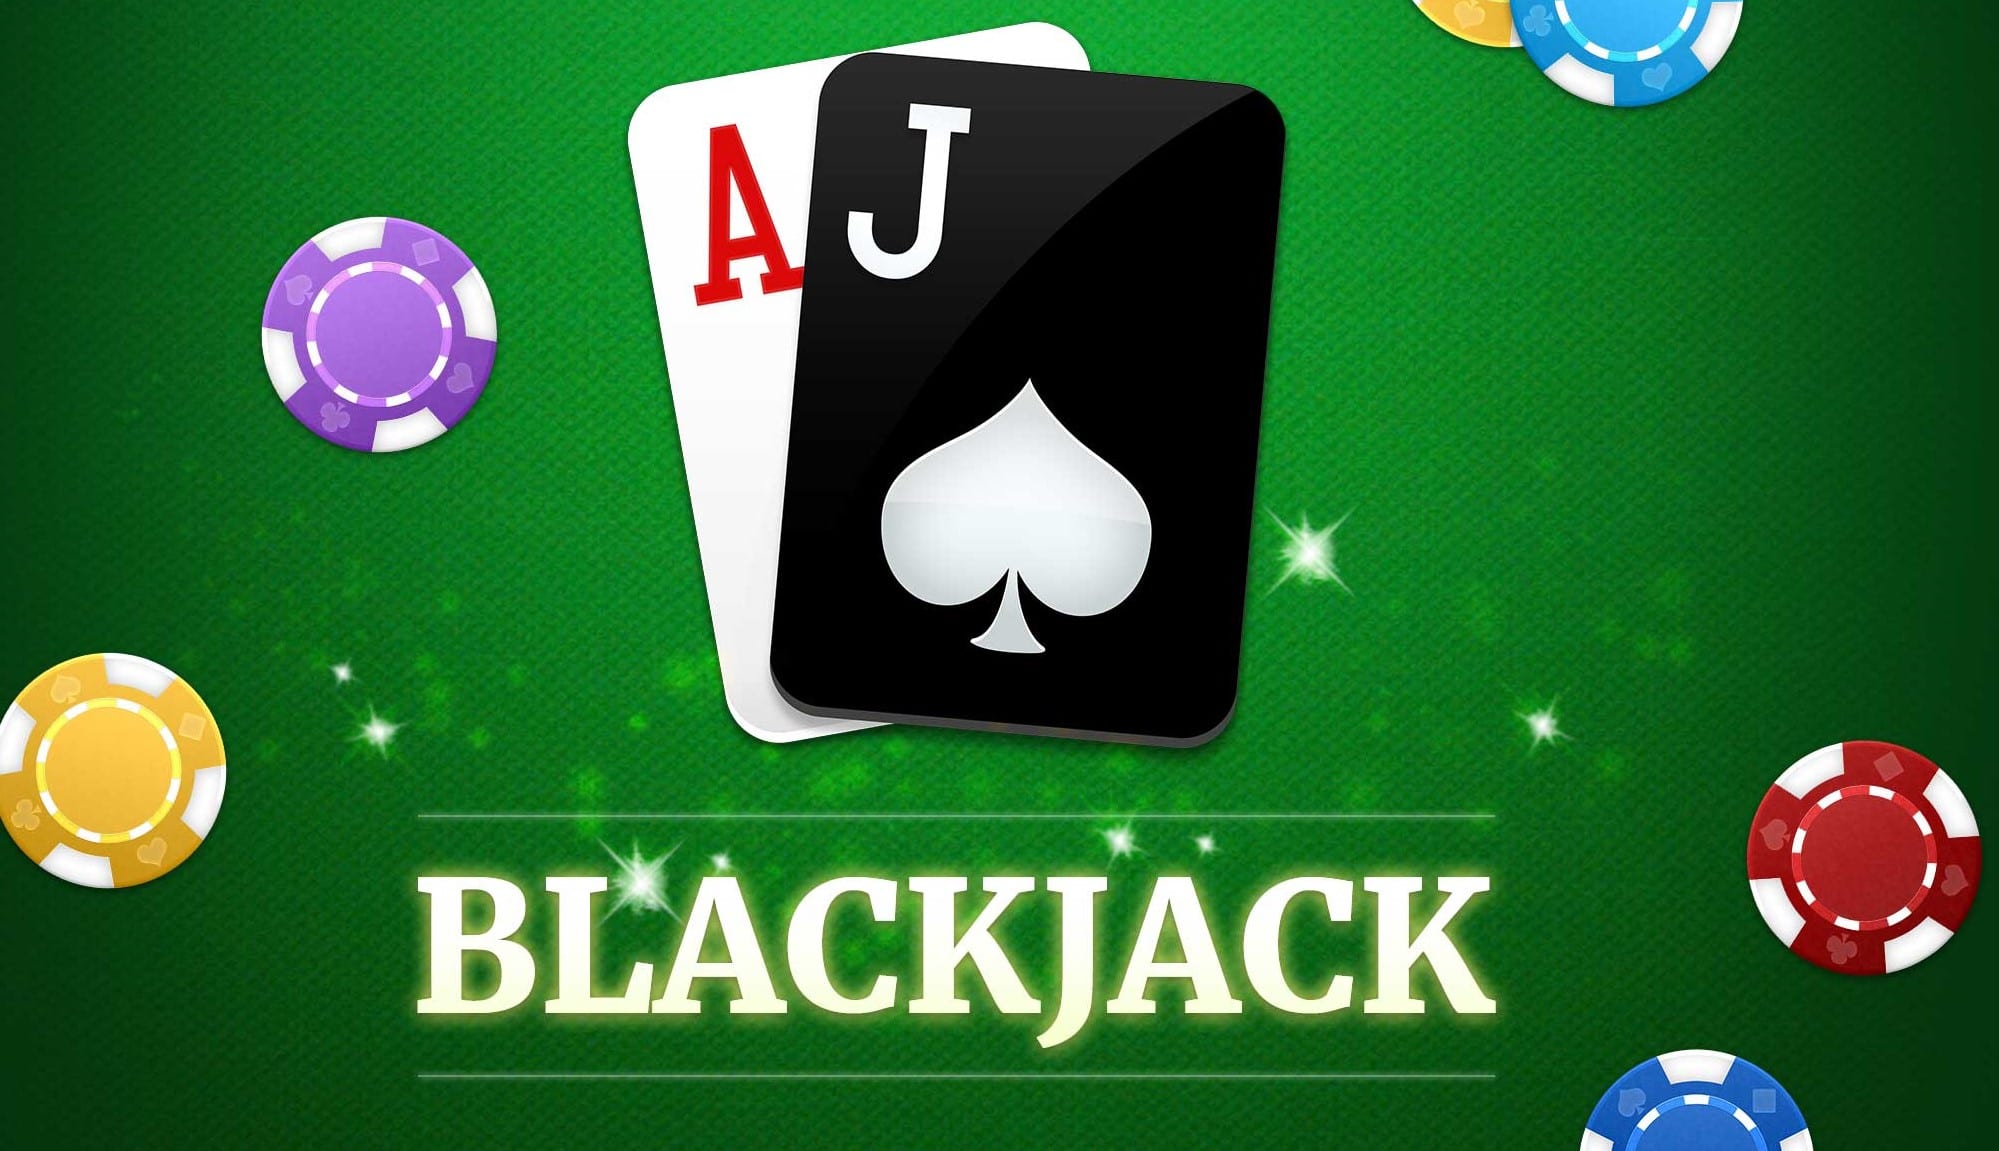 bedava blackjack oynanan casino siteleri